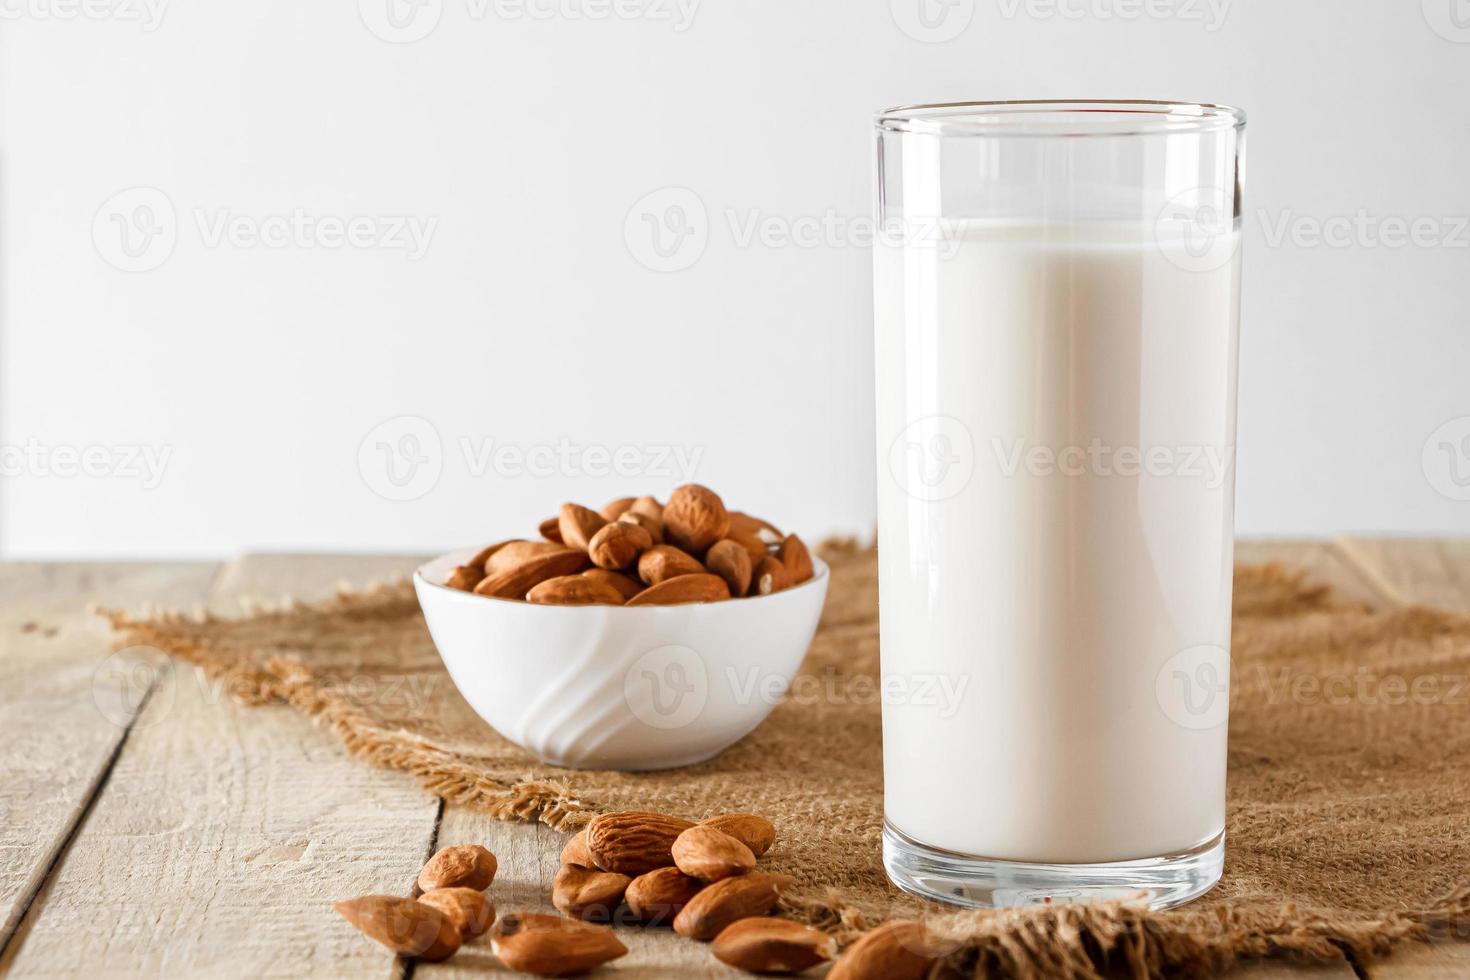 super food - un bicchiere di latte di mandorla per una dieta sana. cibo di tendenza, foto verticale. posto per il tuo testo.